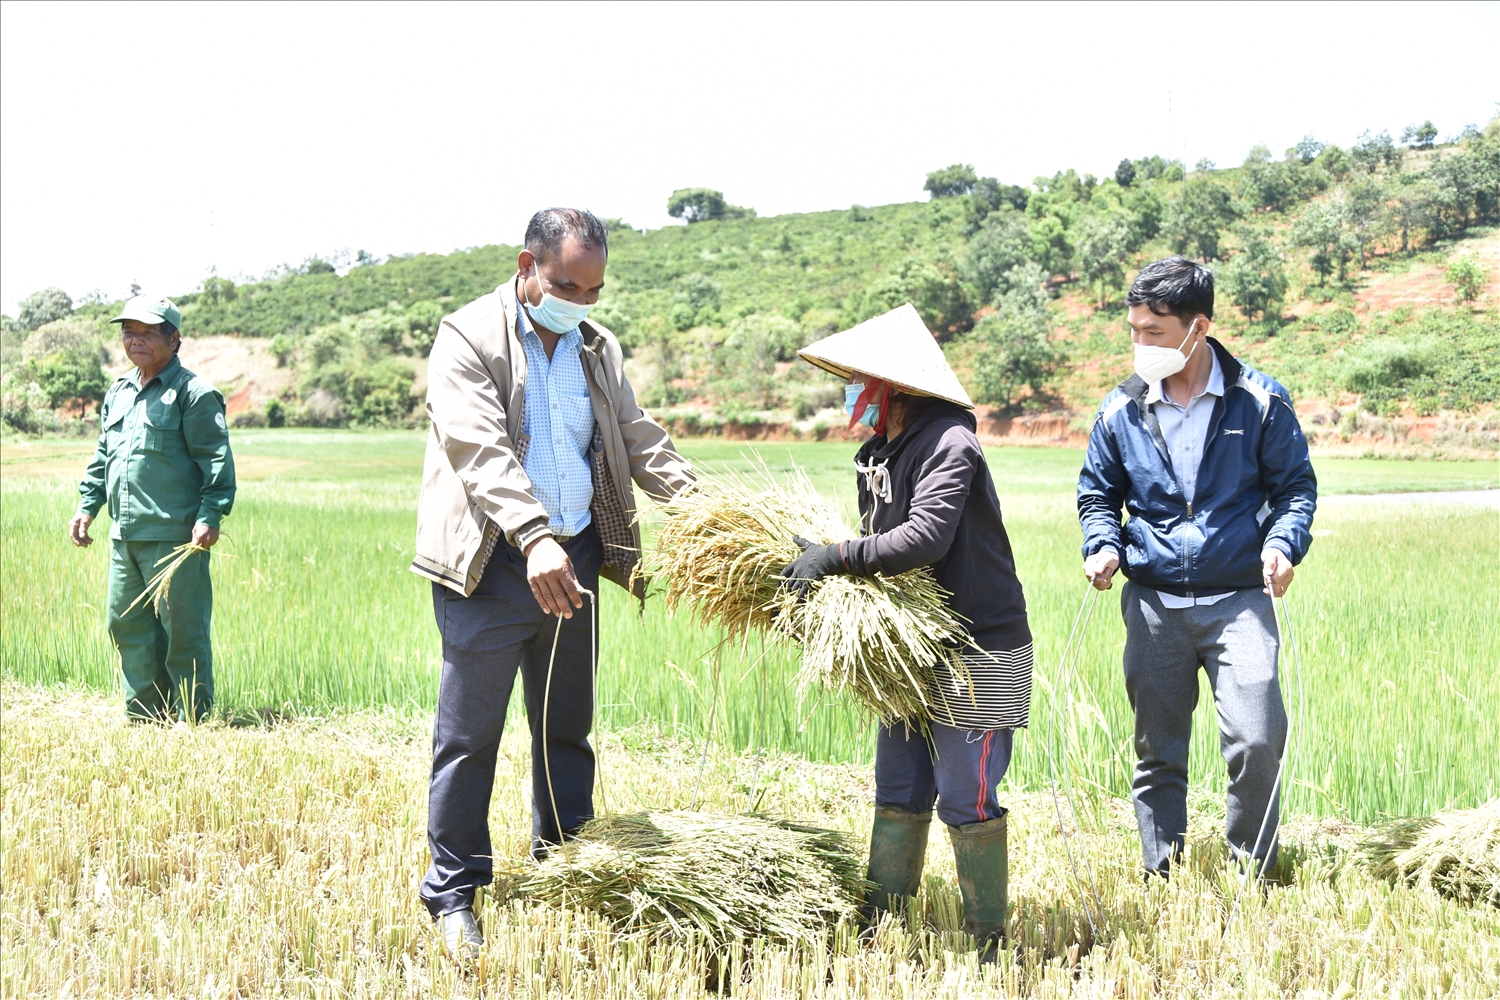 Anh Ksor Tư cùng ra đồng với dân làng để hướng dẫn bà con trồng lúa, xây dựng thương hiệu gạo A Sanh